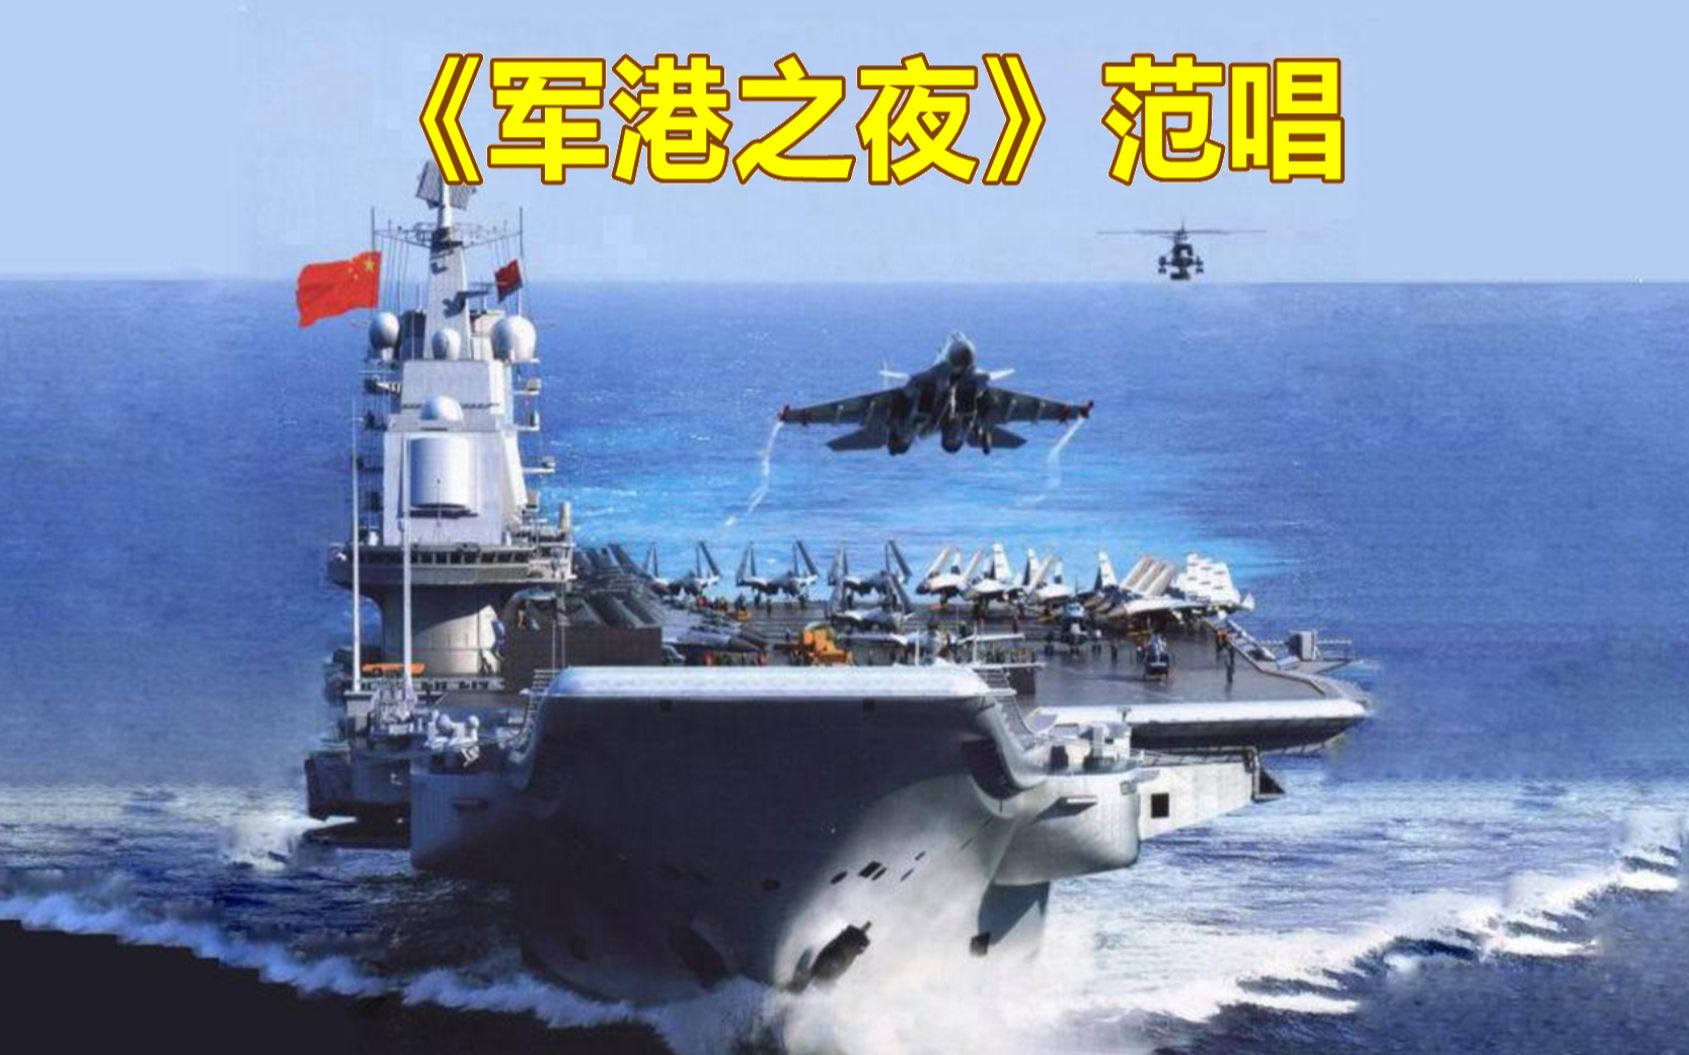 《军港之夜》范唱,中国的领海没有一寸是多余的!